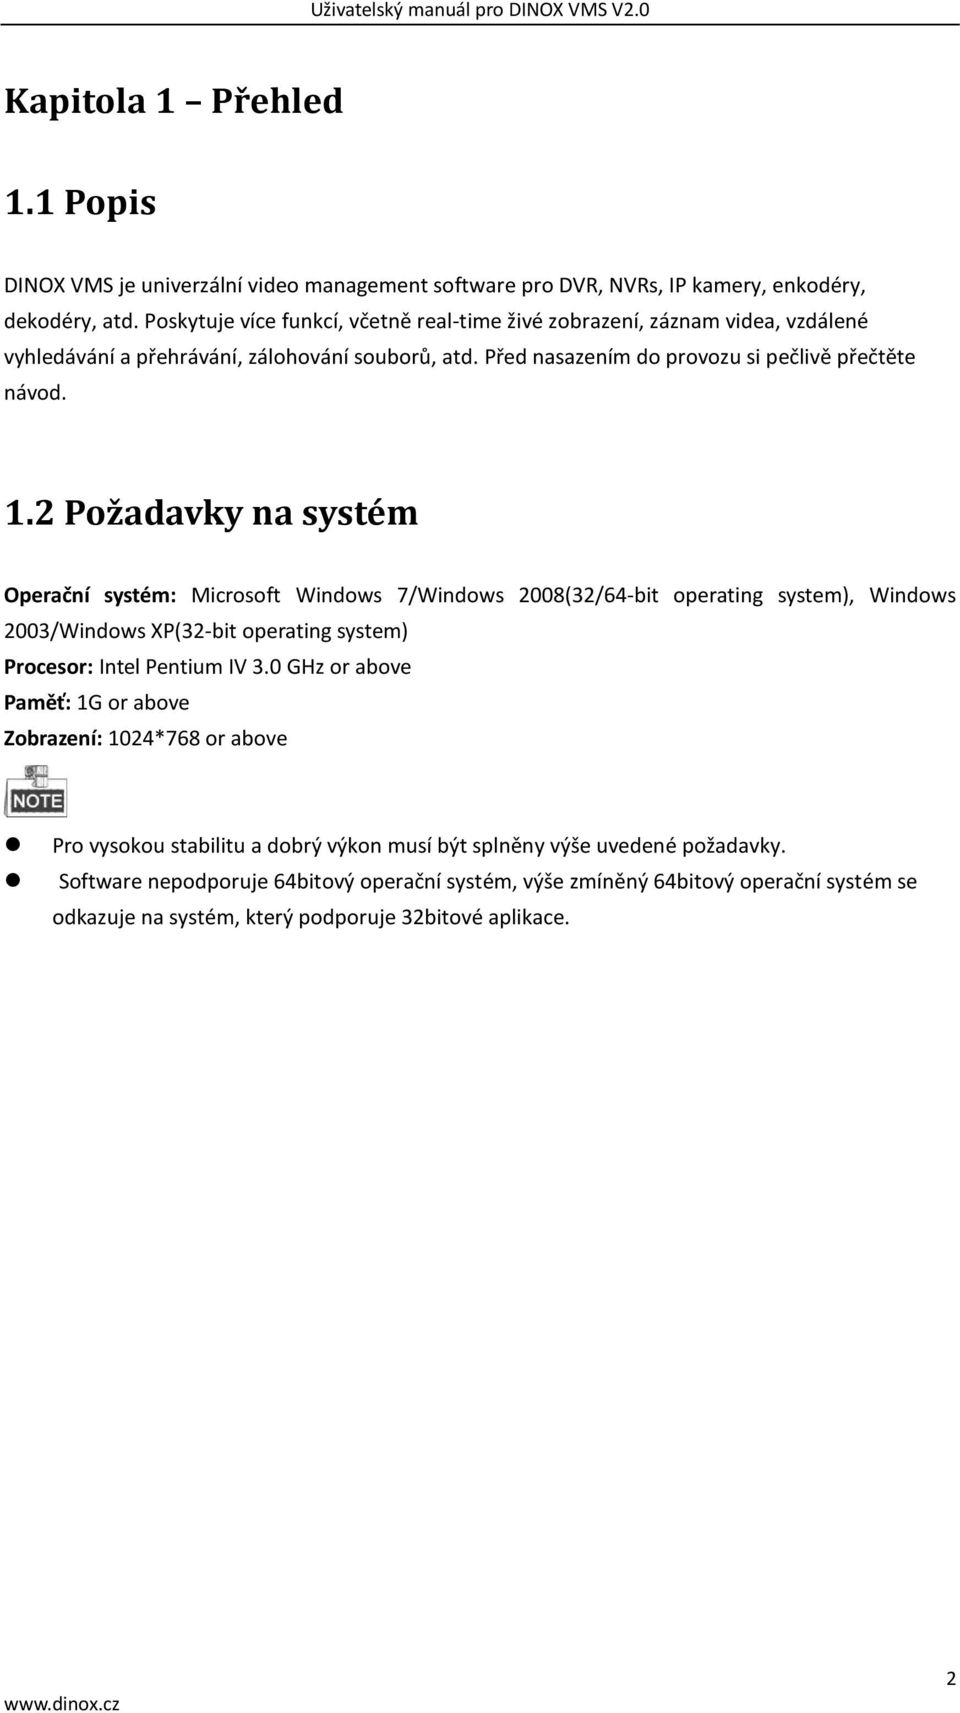 2 Požadavky na systém Operační systém: Microsoft Windows 7/Windows 2008(32/64-bit operating system), Windows 2003/Windows XP(32-bit operating system) Procesor: Intel Pentium IV 3.